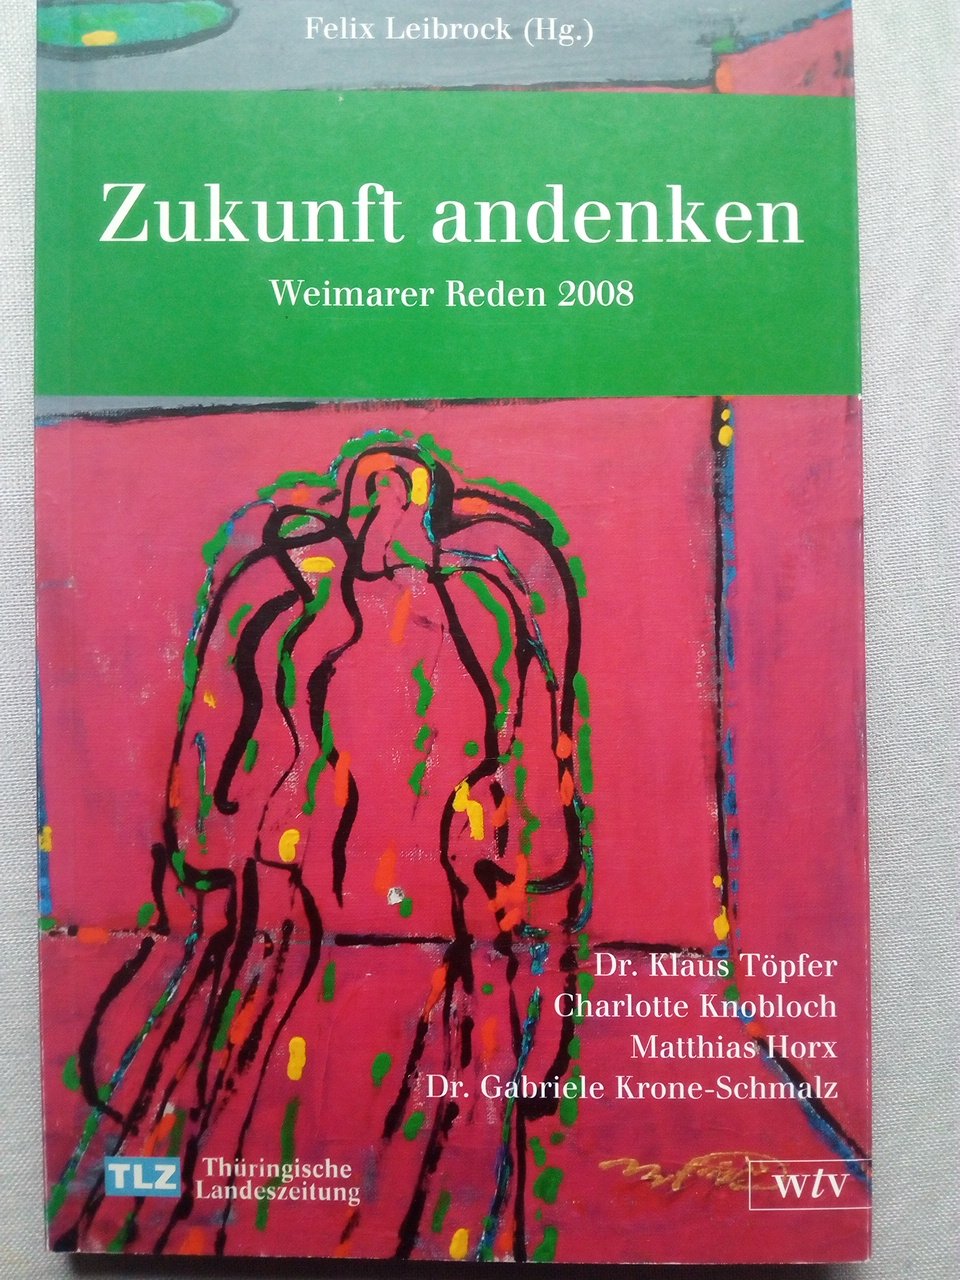 Zukunft andenken - Weimarer Reden 2008 - Töpfer, Klaus; Knobloch, Charlotte; Horx, Matthias; Krone-Schmalz, Gabriele